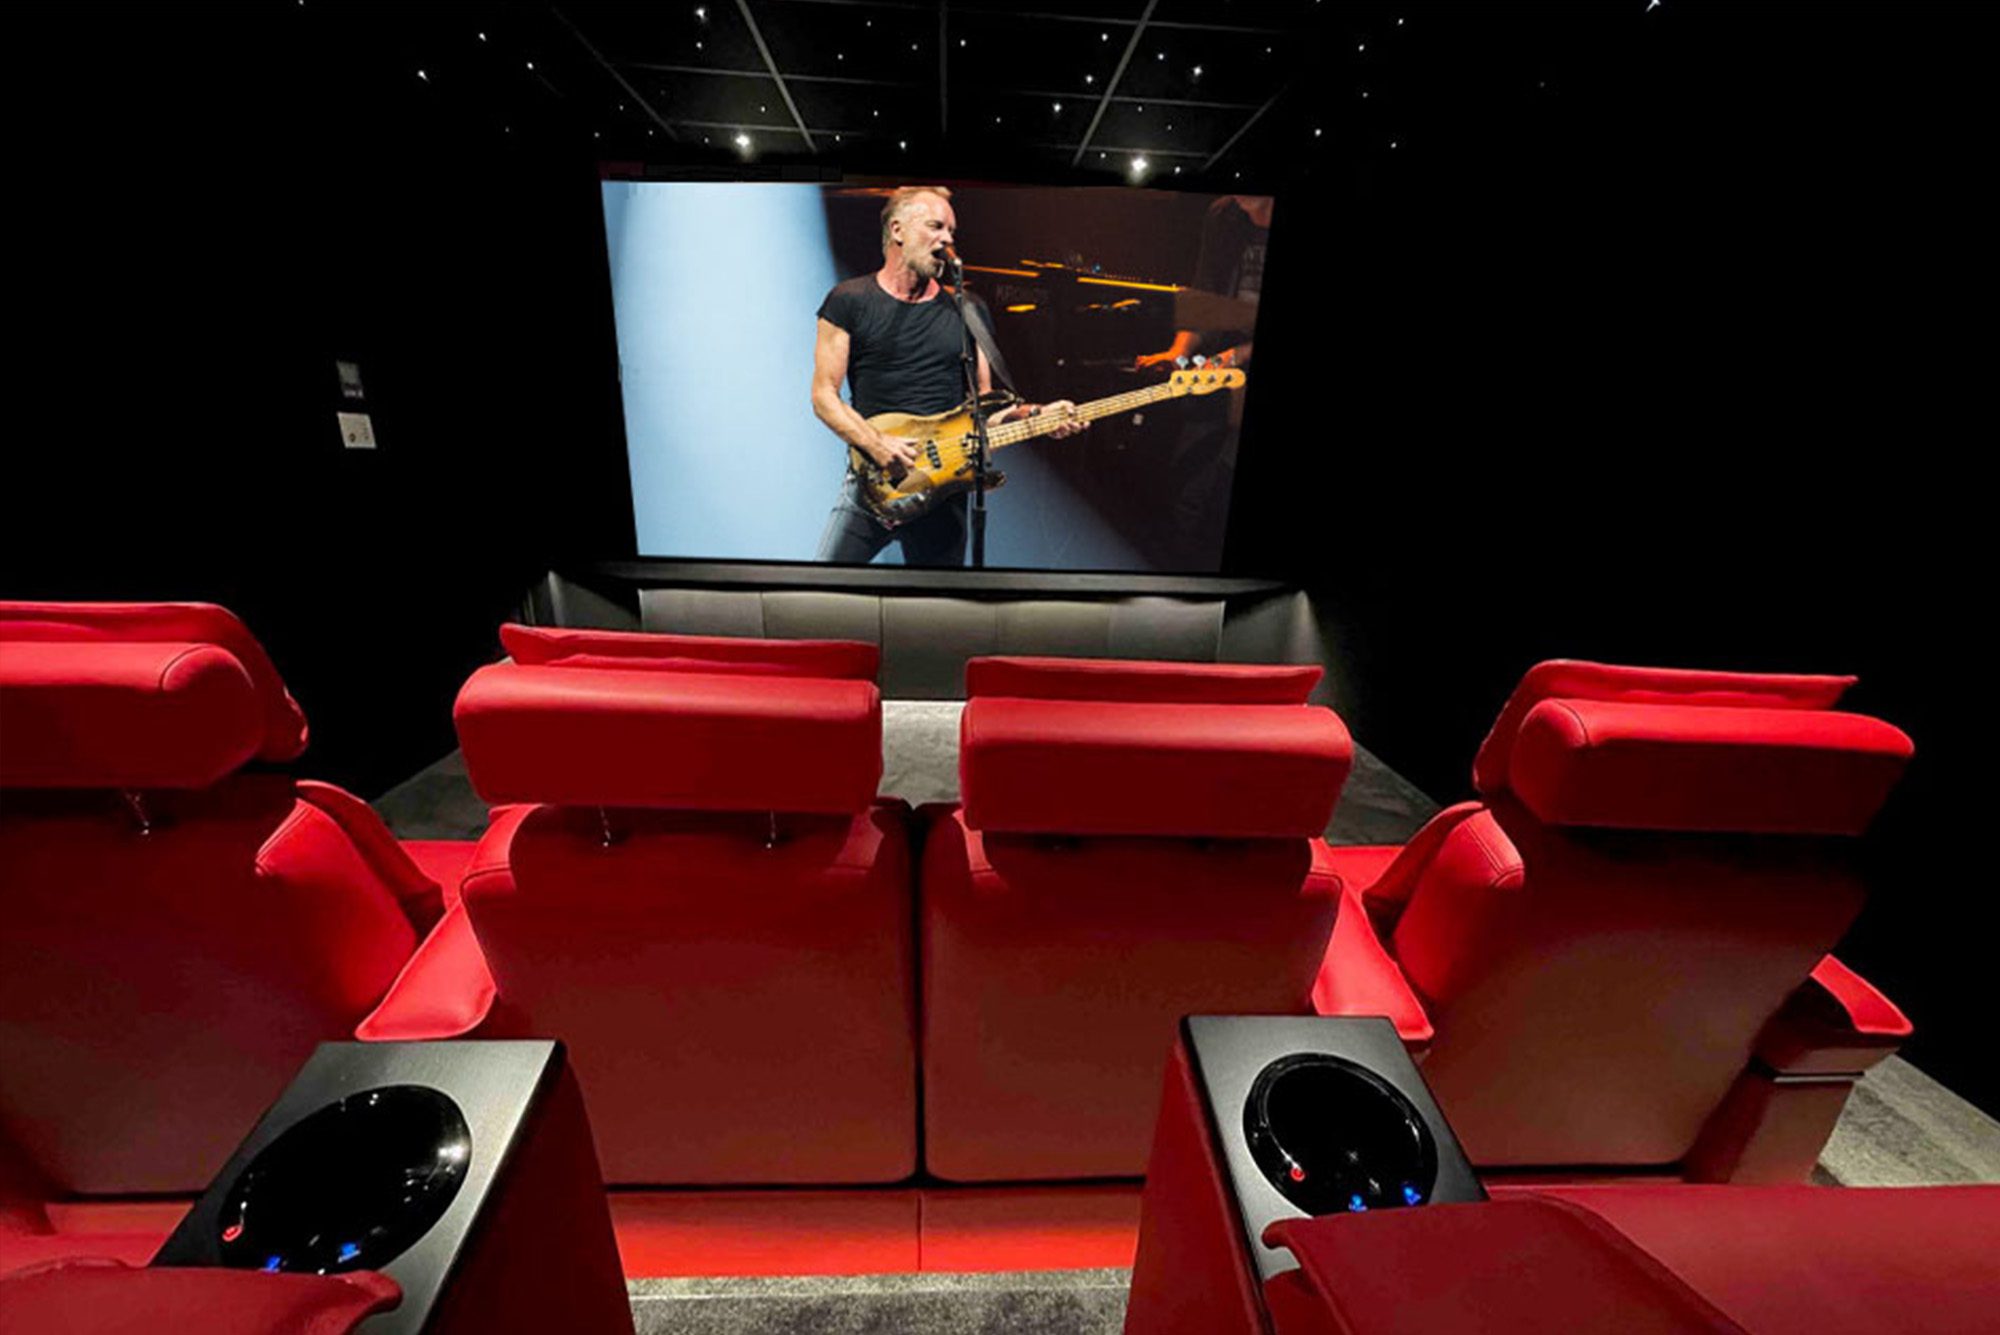 Salle de cinéma privée 8 places 24,5m4 avec fauteuils en tissu rouge, ciel étoilé, spots, meuble chêne sur mesure sous l'écran à Marseille